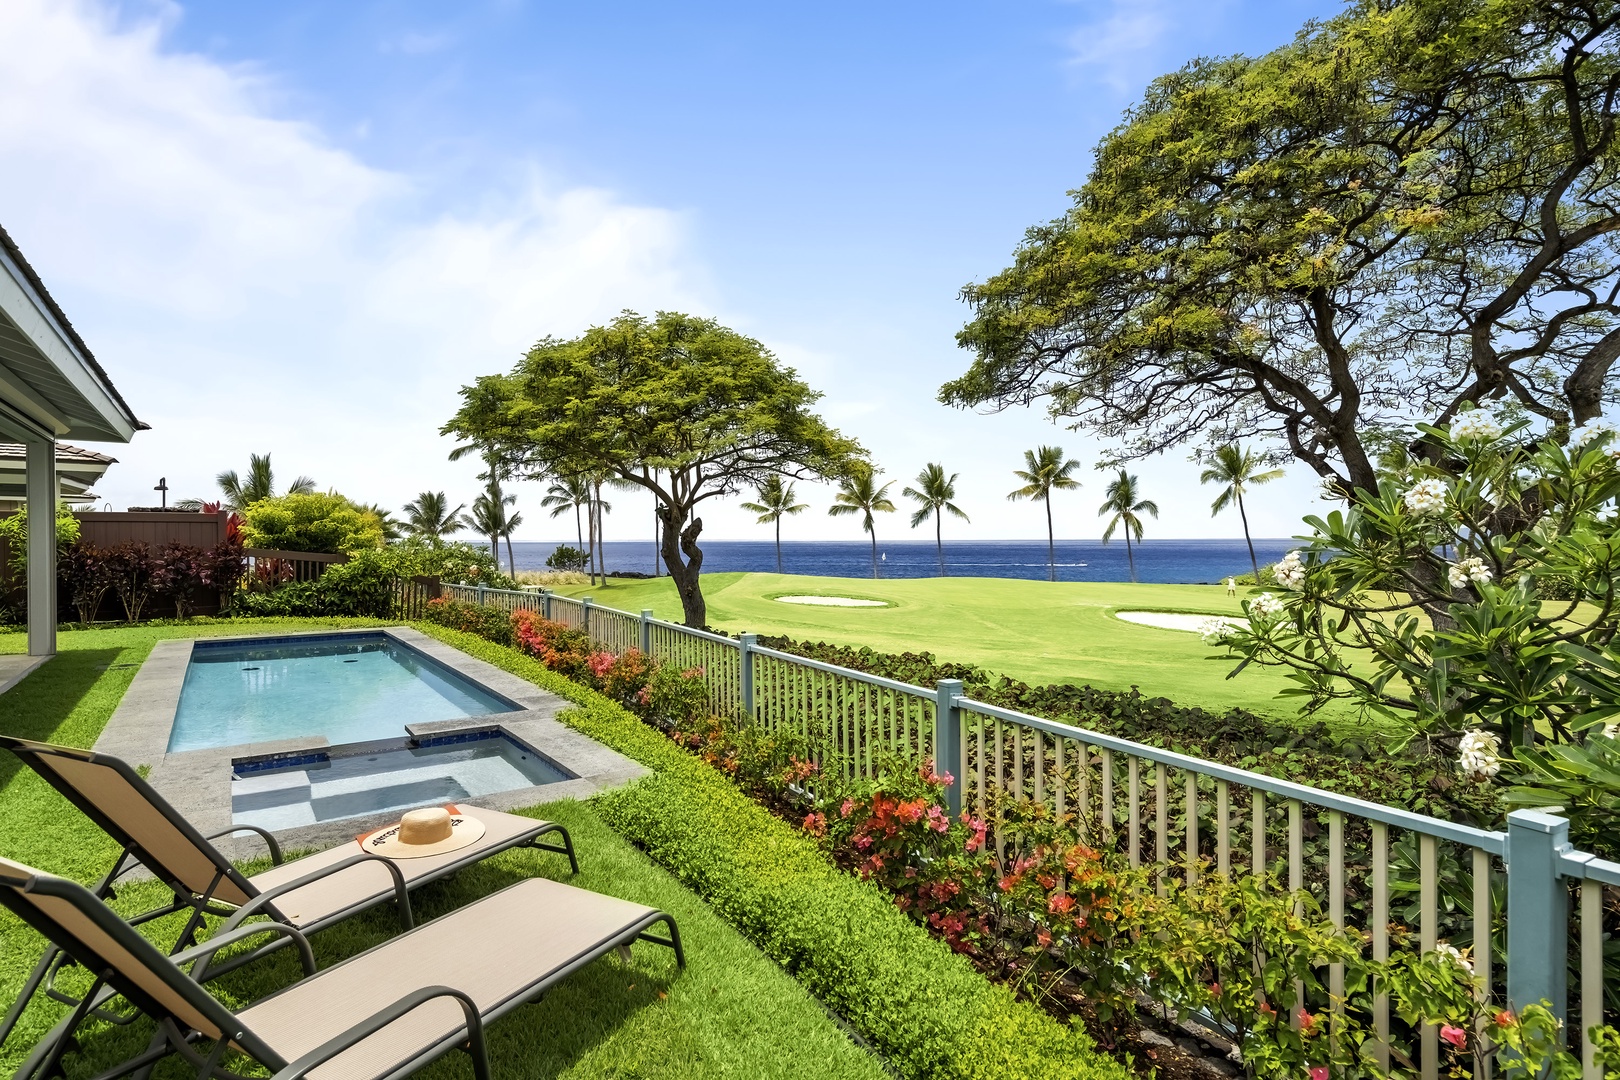 Kailua Kona Vacation Rentals, Holua Kai #27 - Lounge poolside!